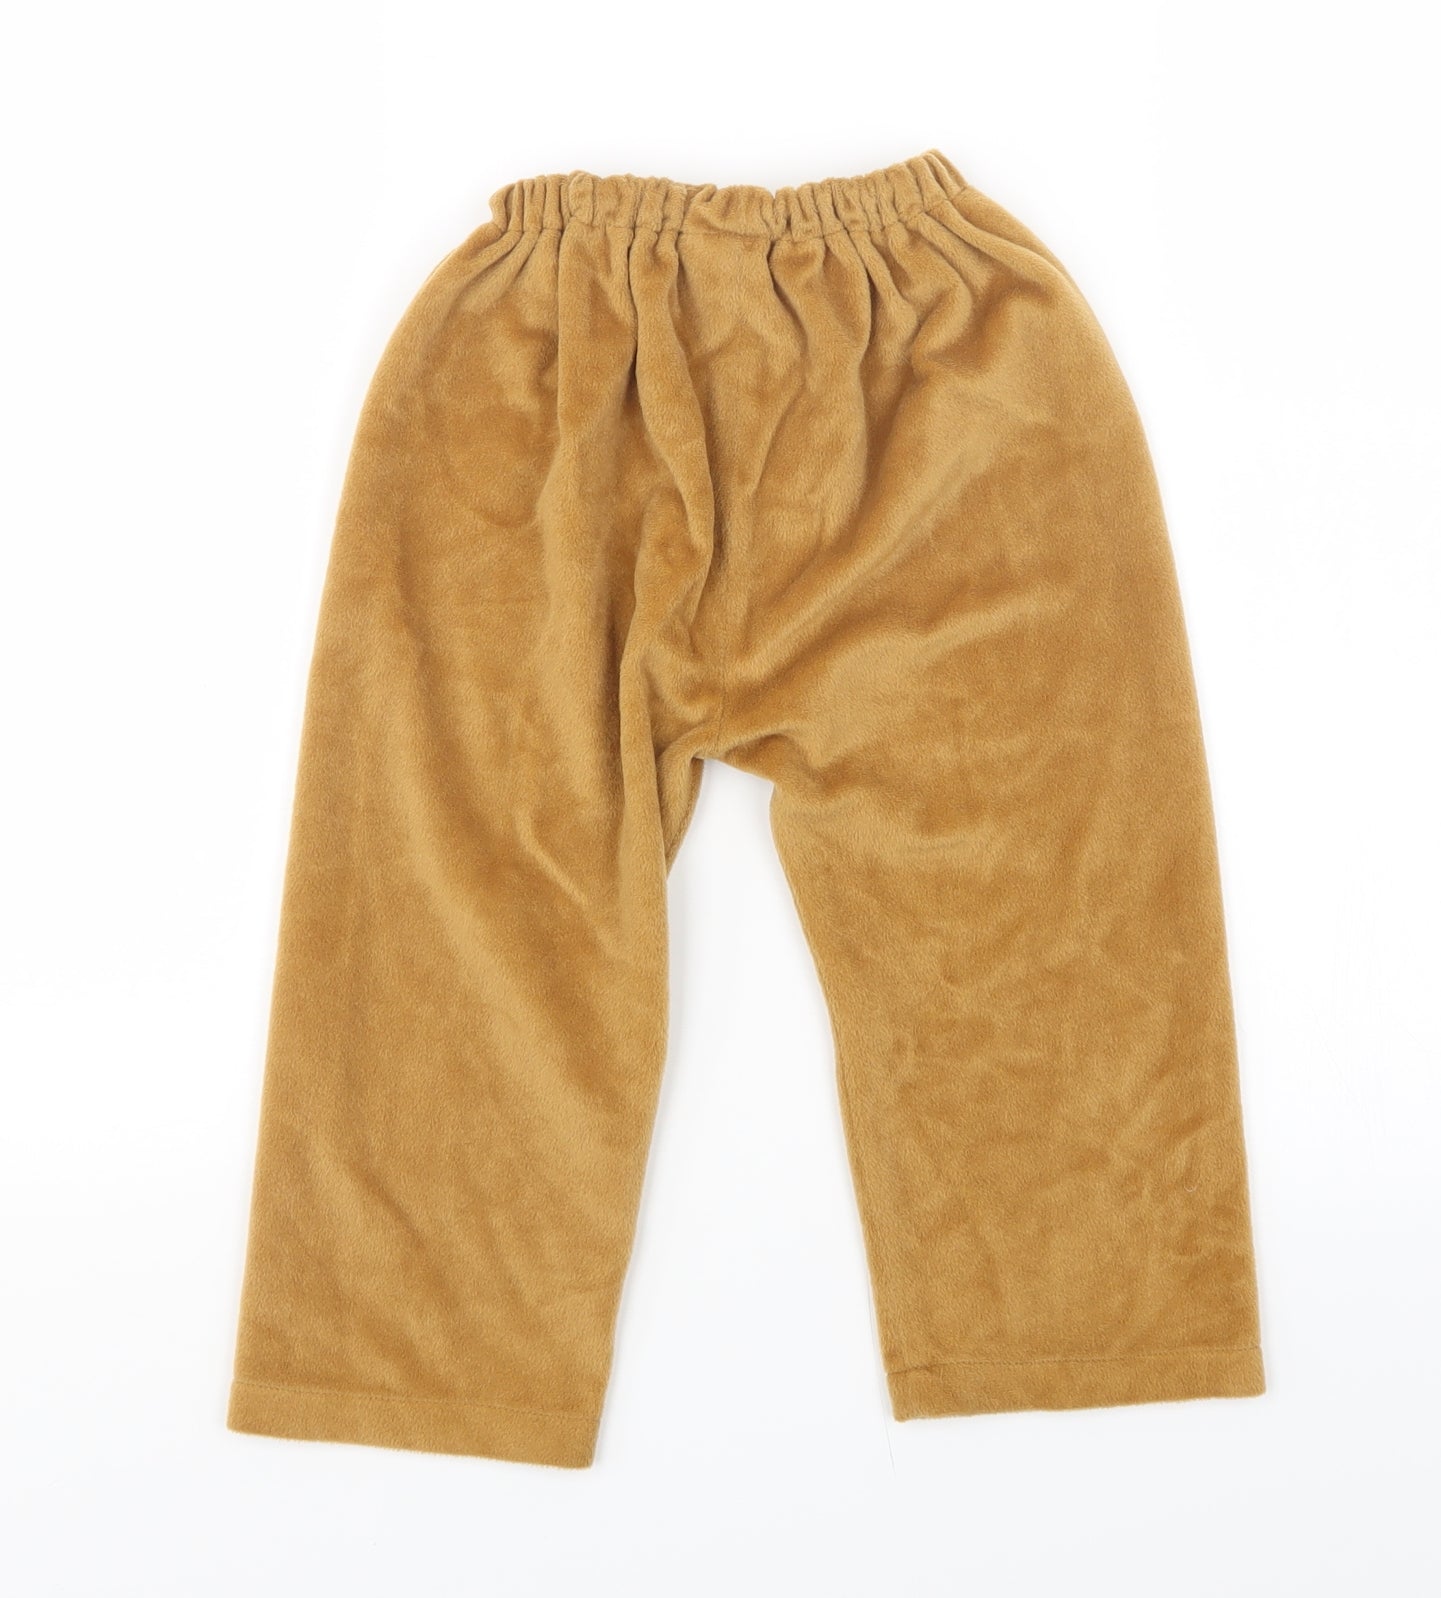 TU Boys Brown Solid Fleece  Pyjama Pants Size 2-3 Years